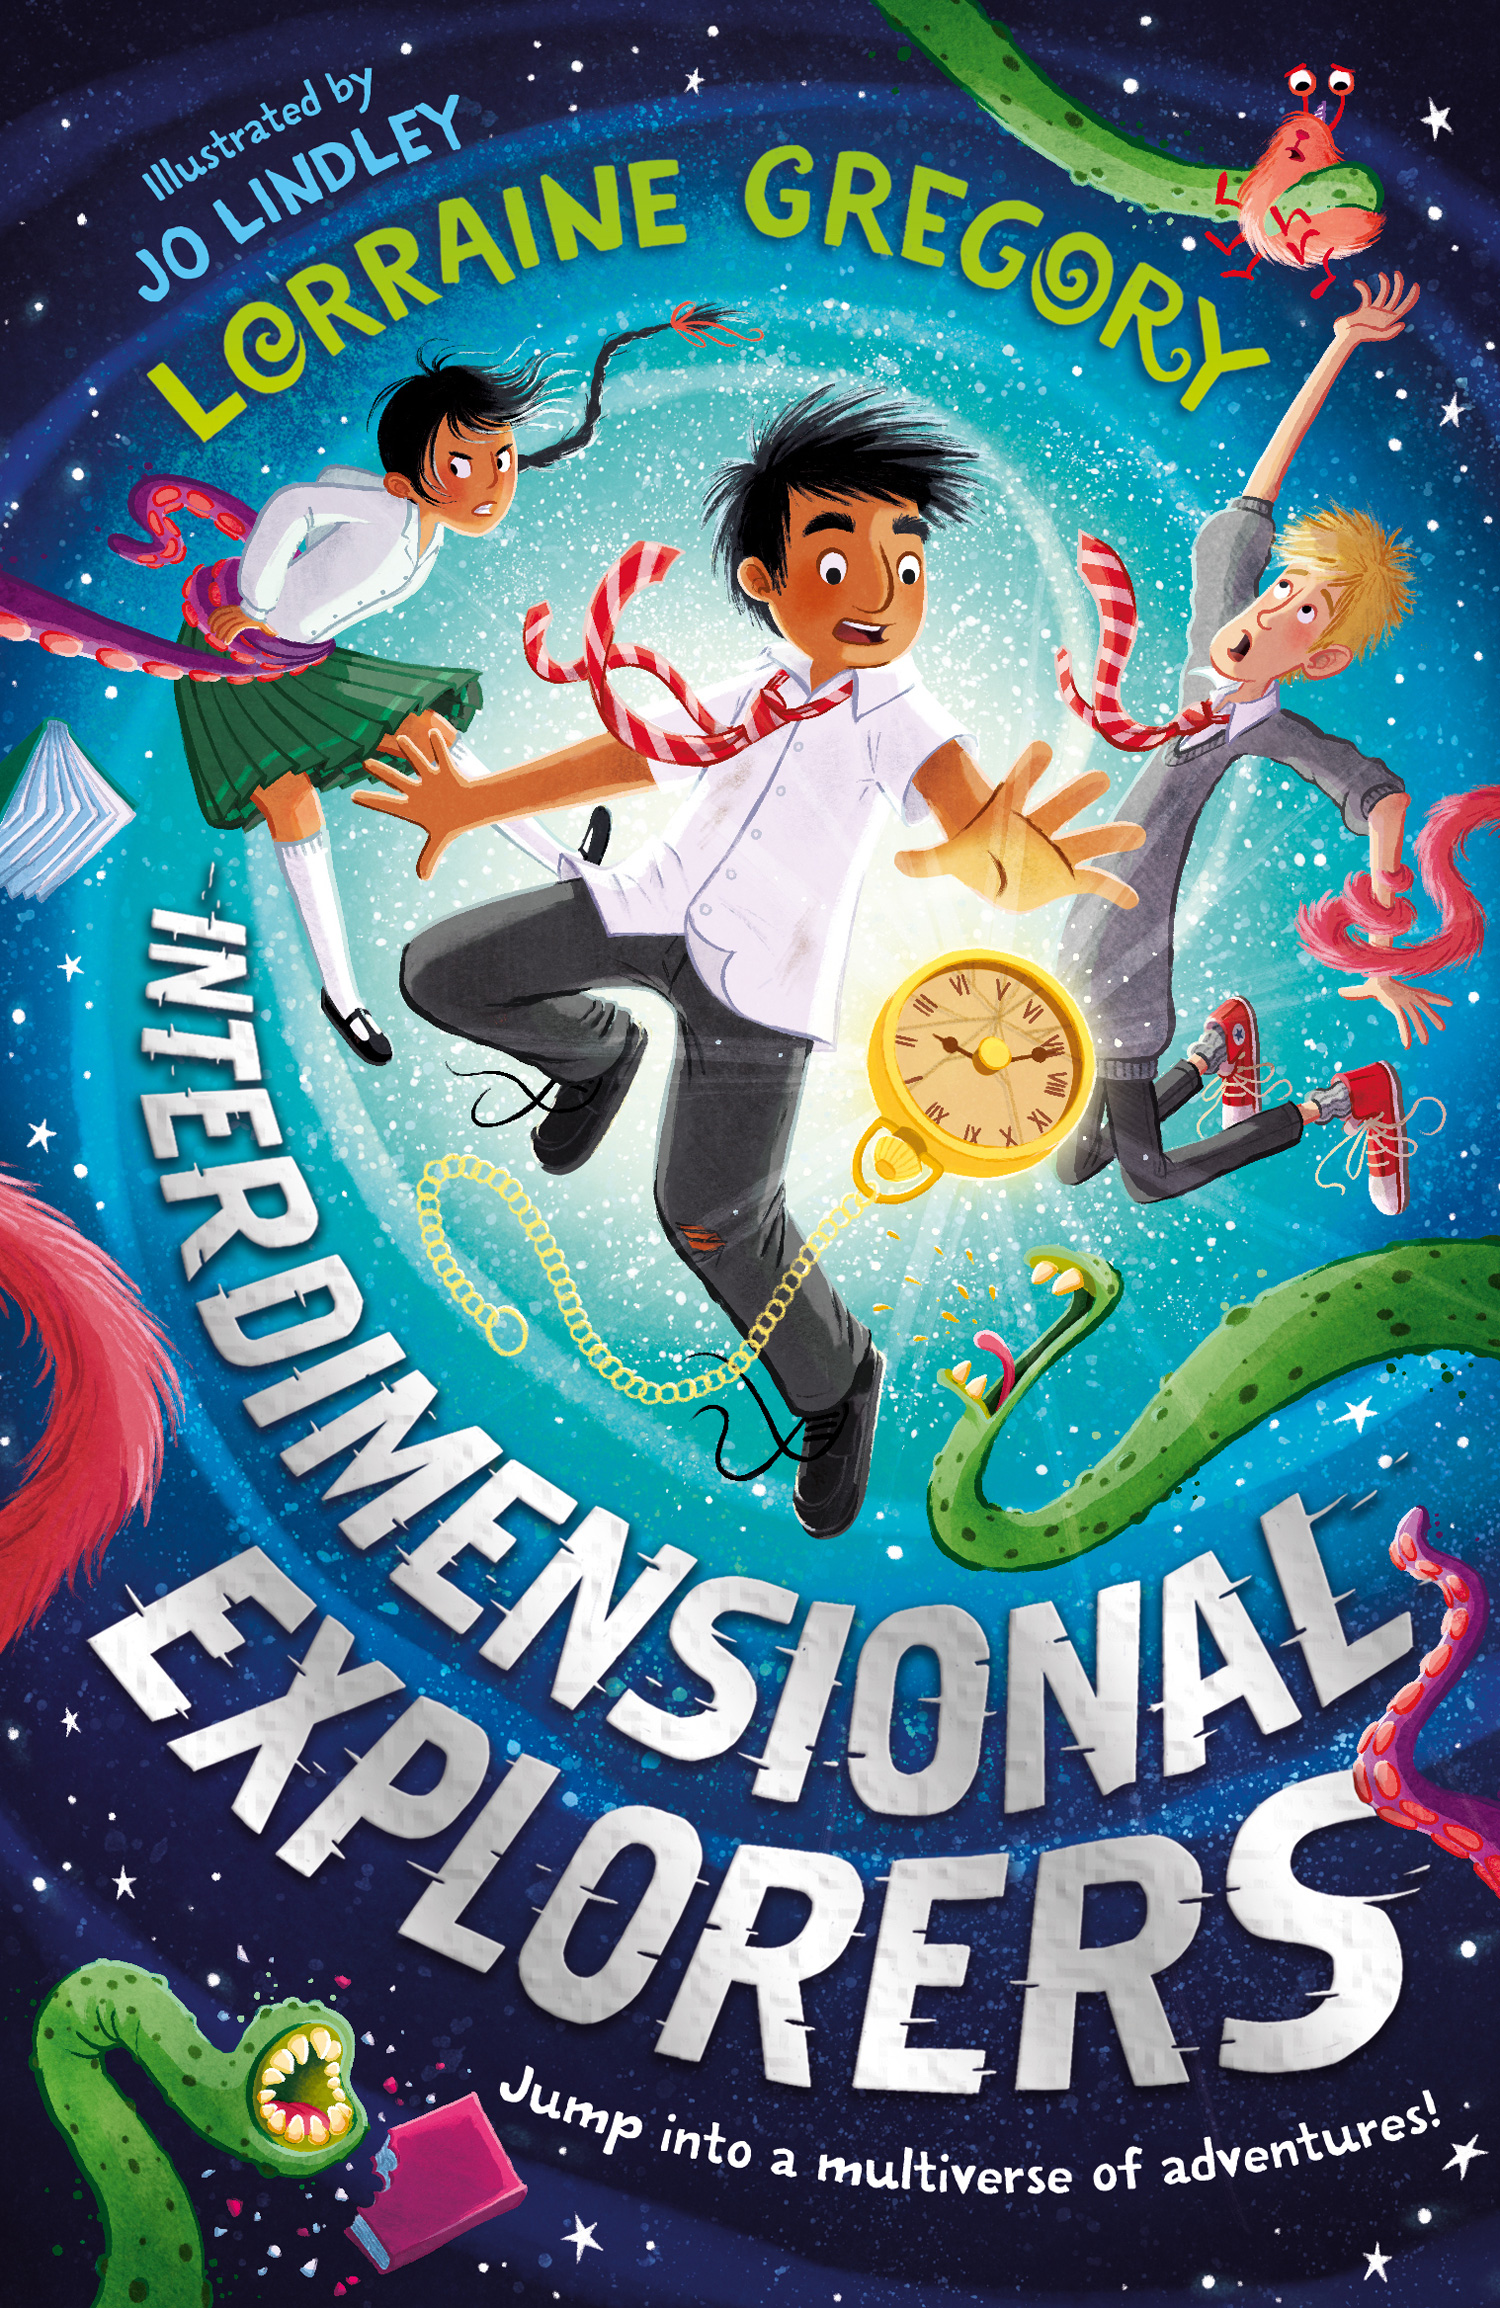  Interdimensional Explorers Book 1